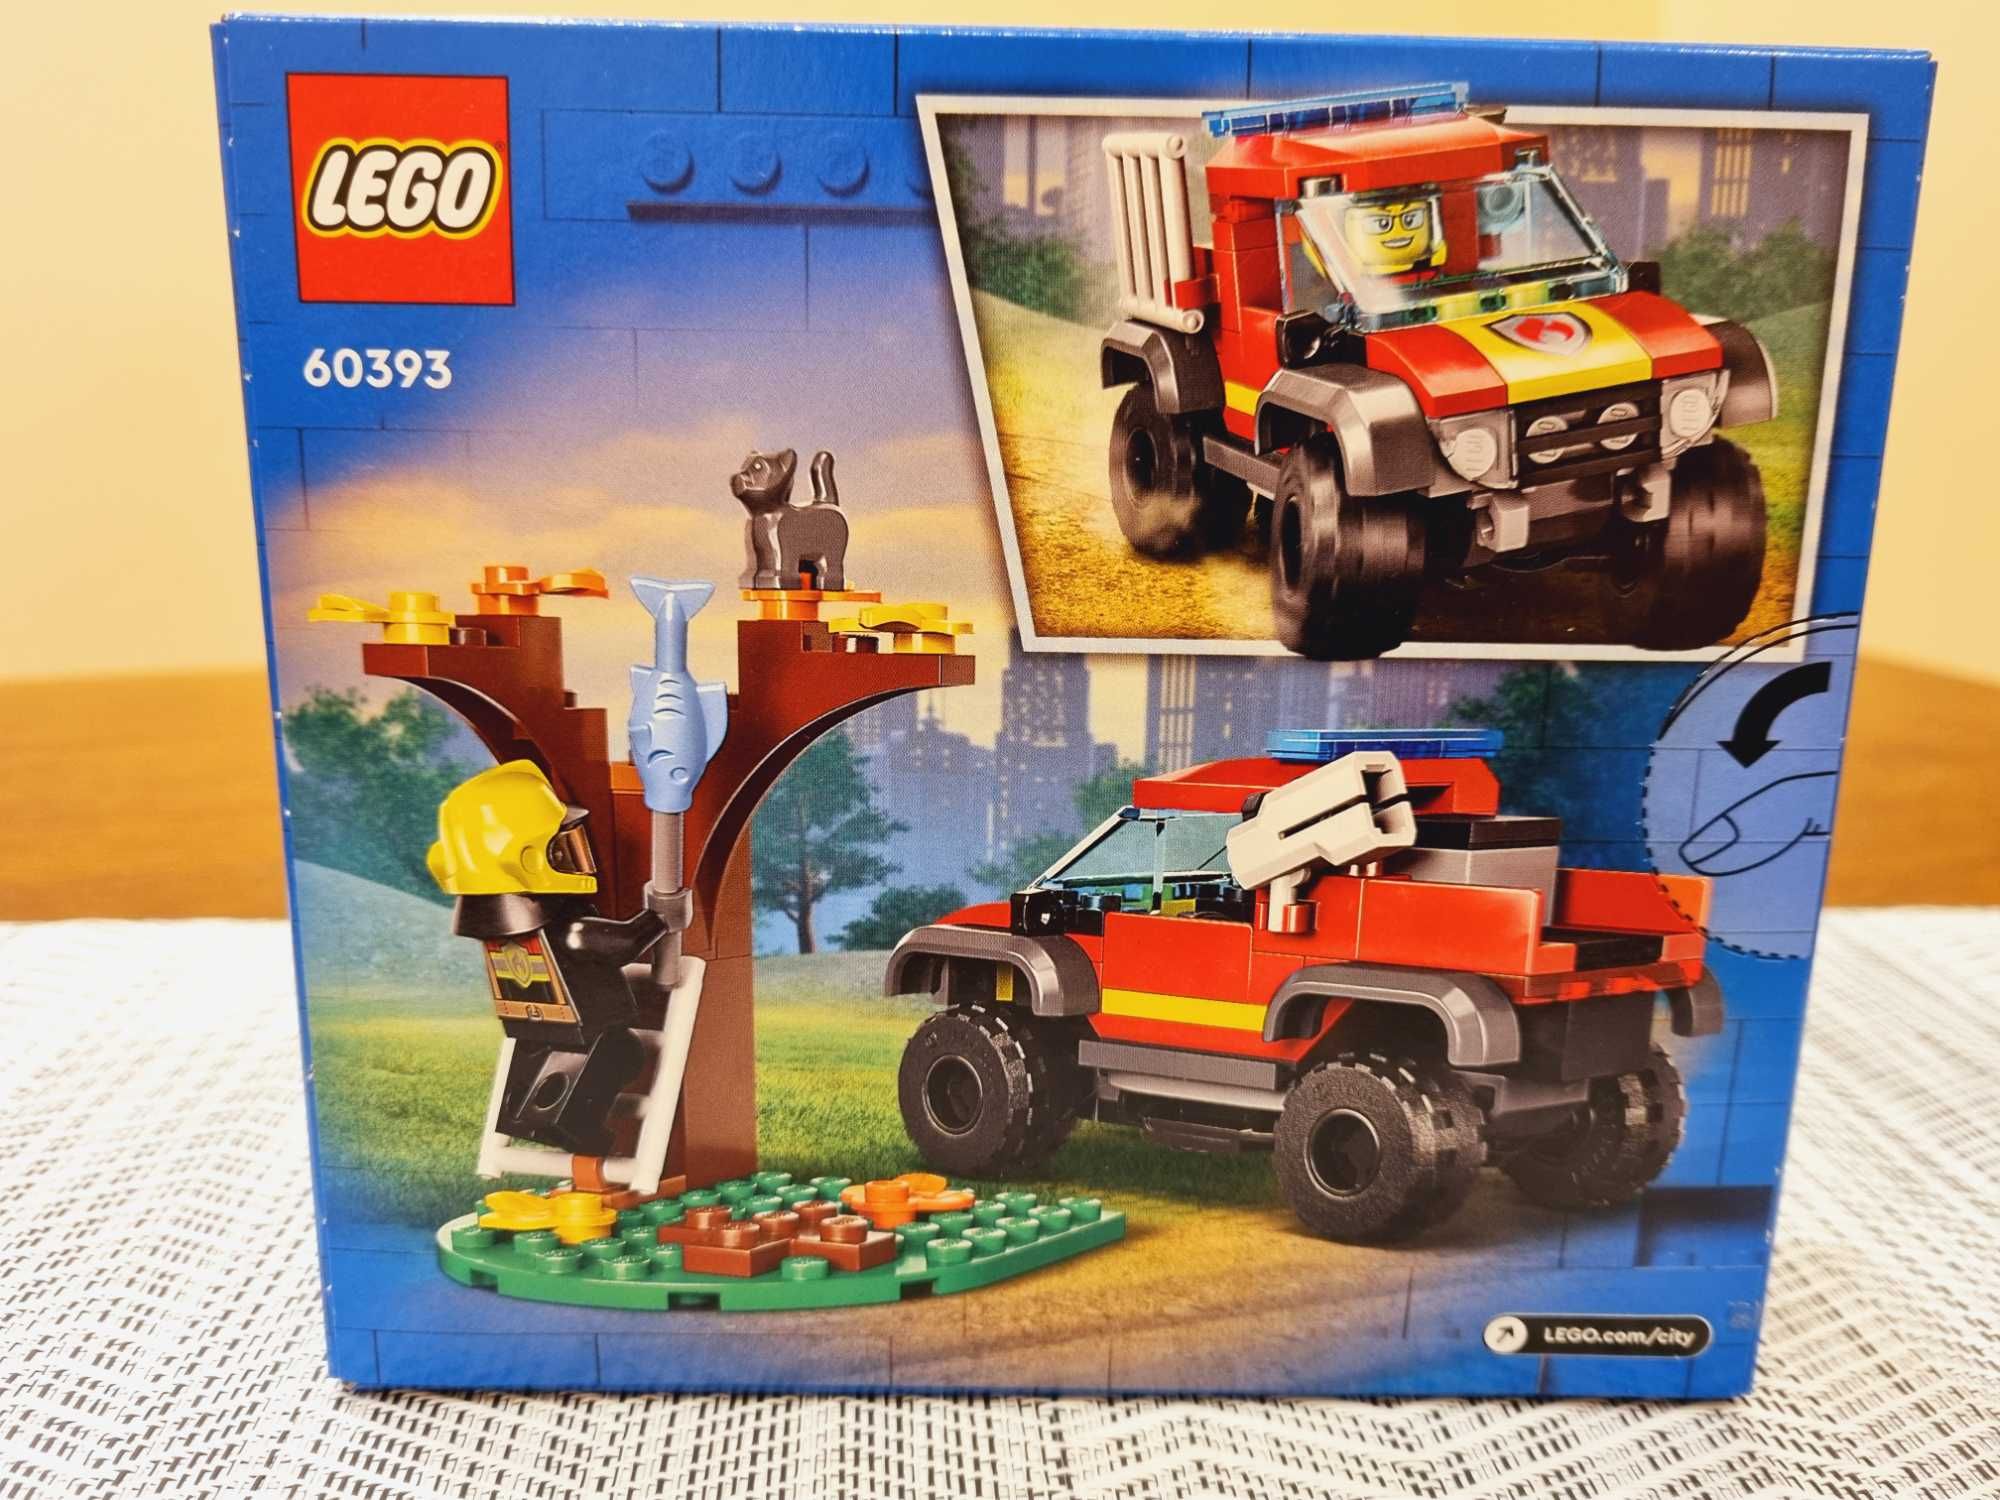 LEGO 60393 City - Wóz strażacki 4x4 - misja ratunkowa